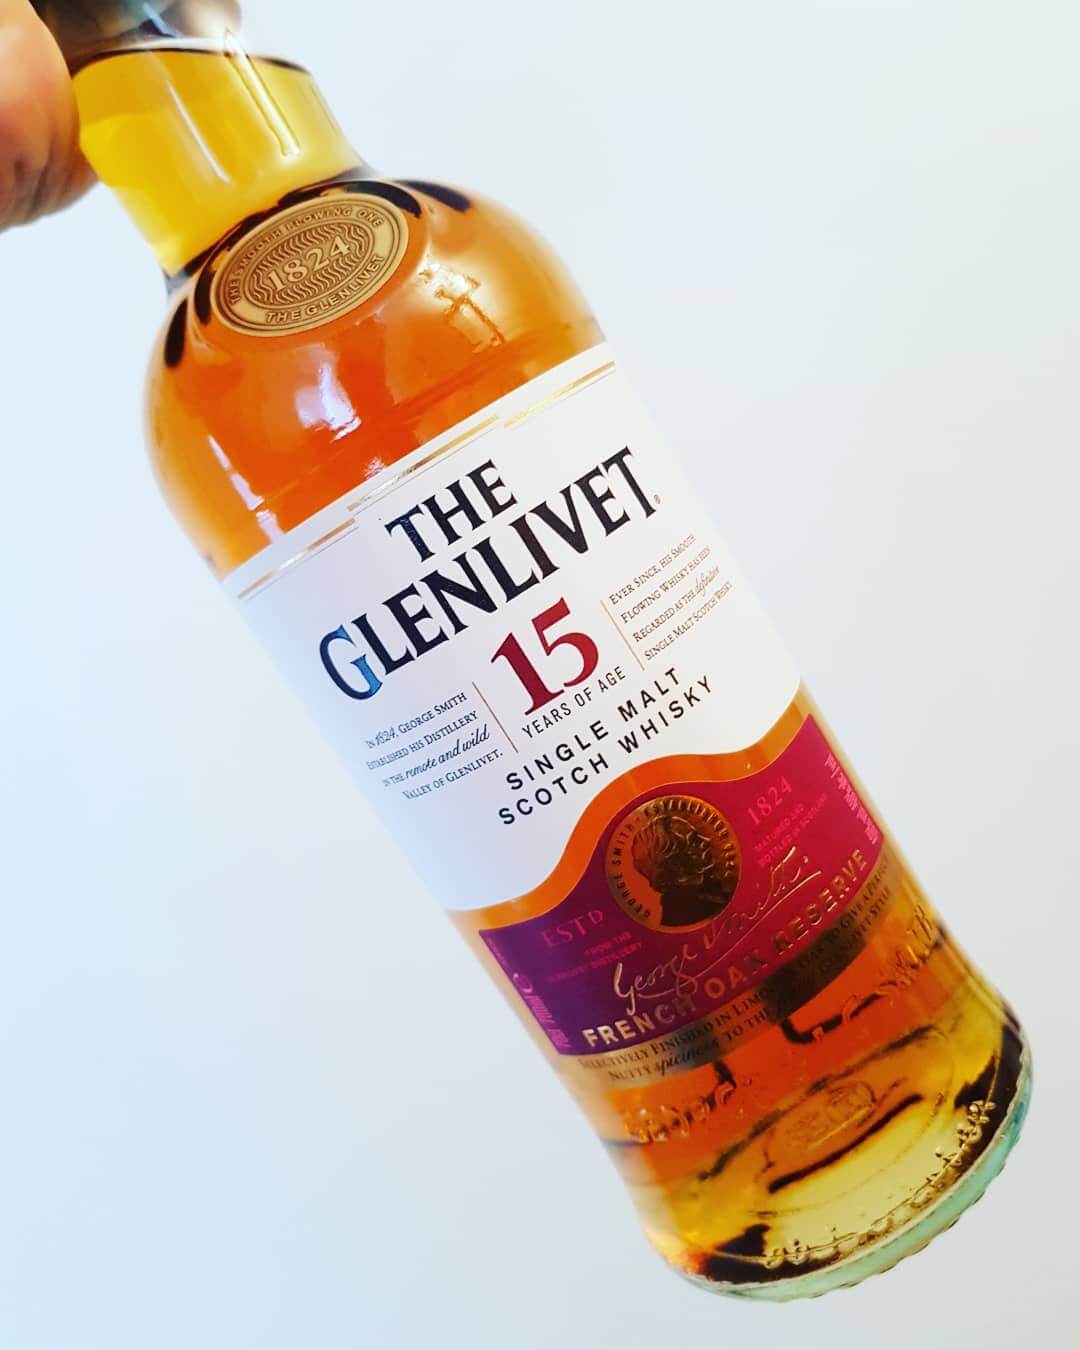 The Glenlivet 15